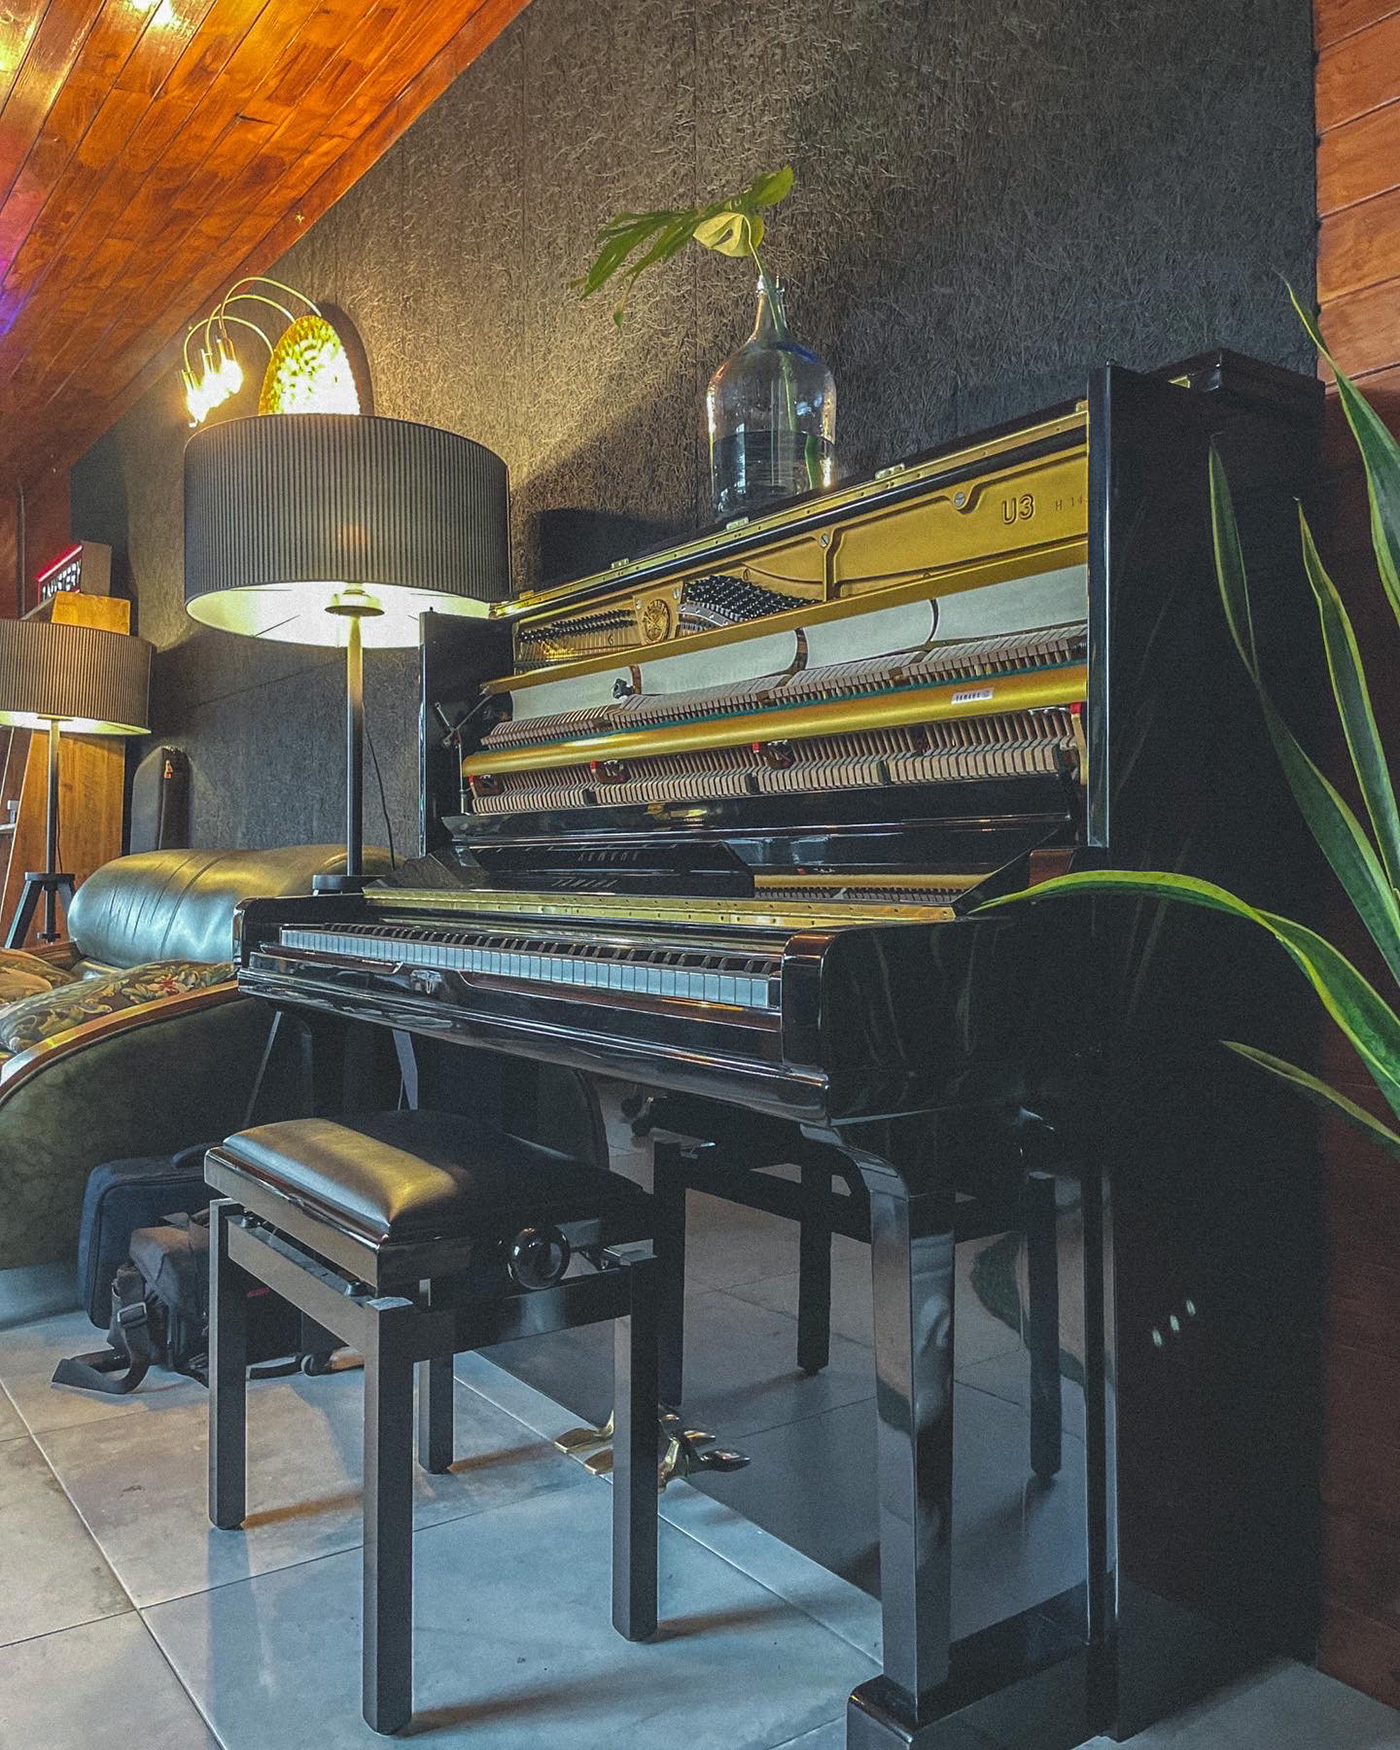 Audio Decoração industrial interior design  music photo Piano plants stuidio wood